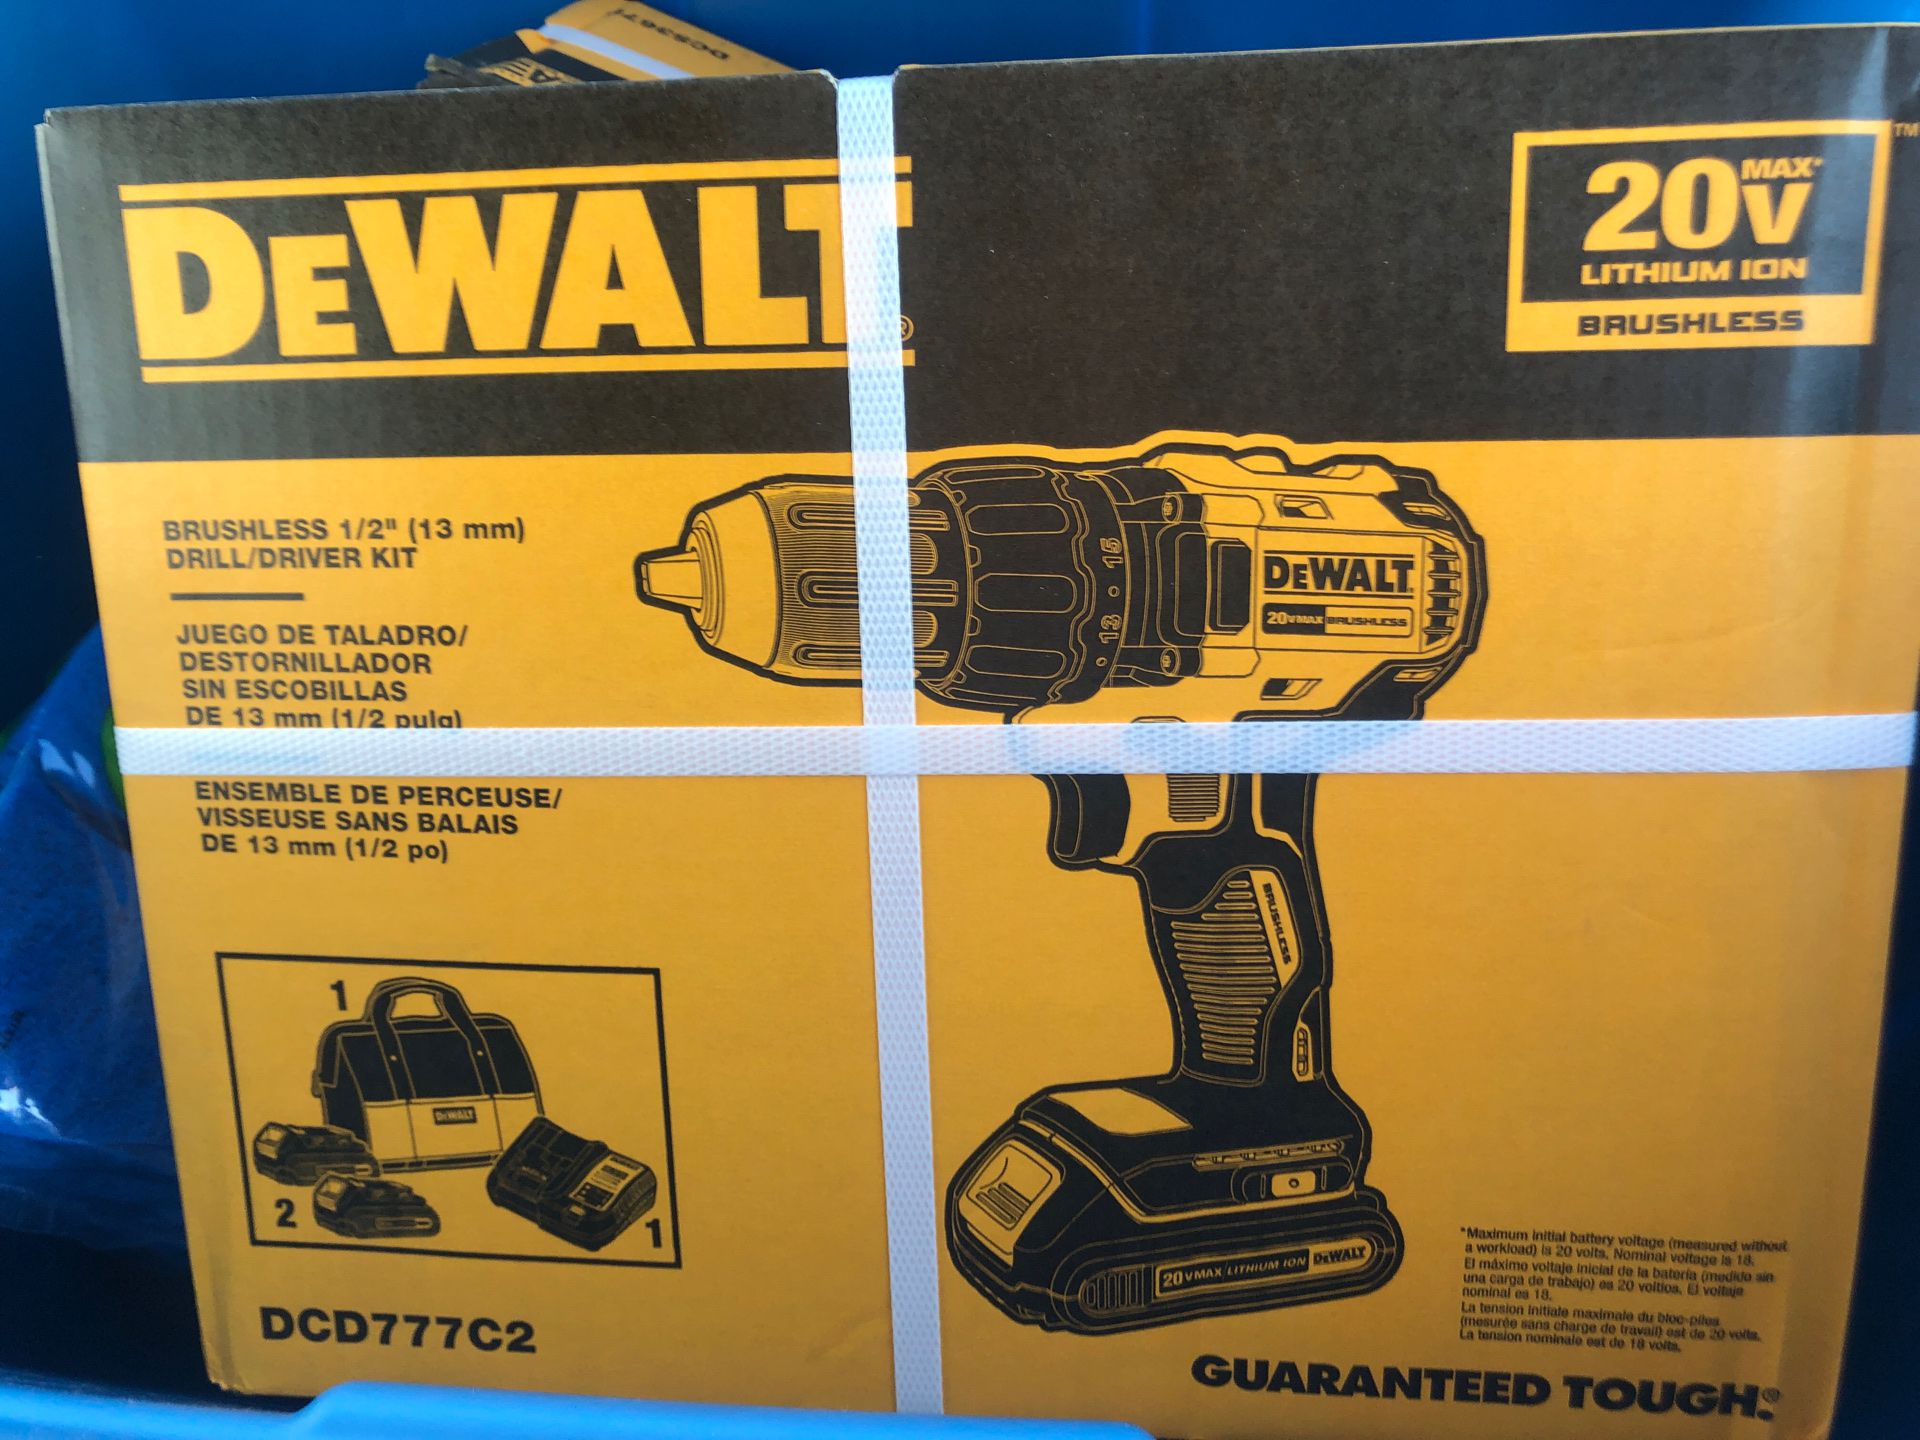 Dewalt 20 V lithium ion brushless drill driver kit